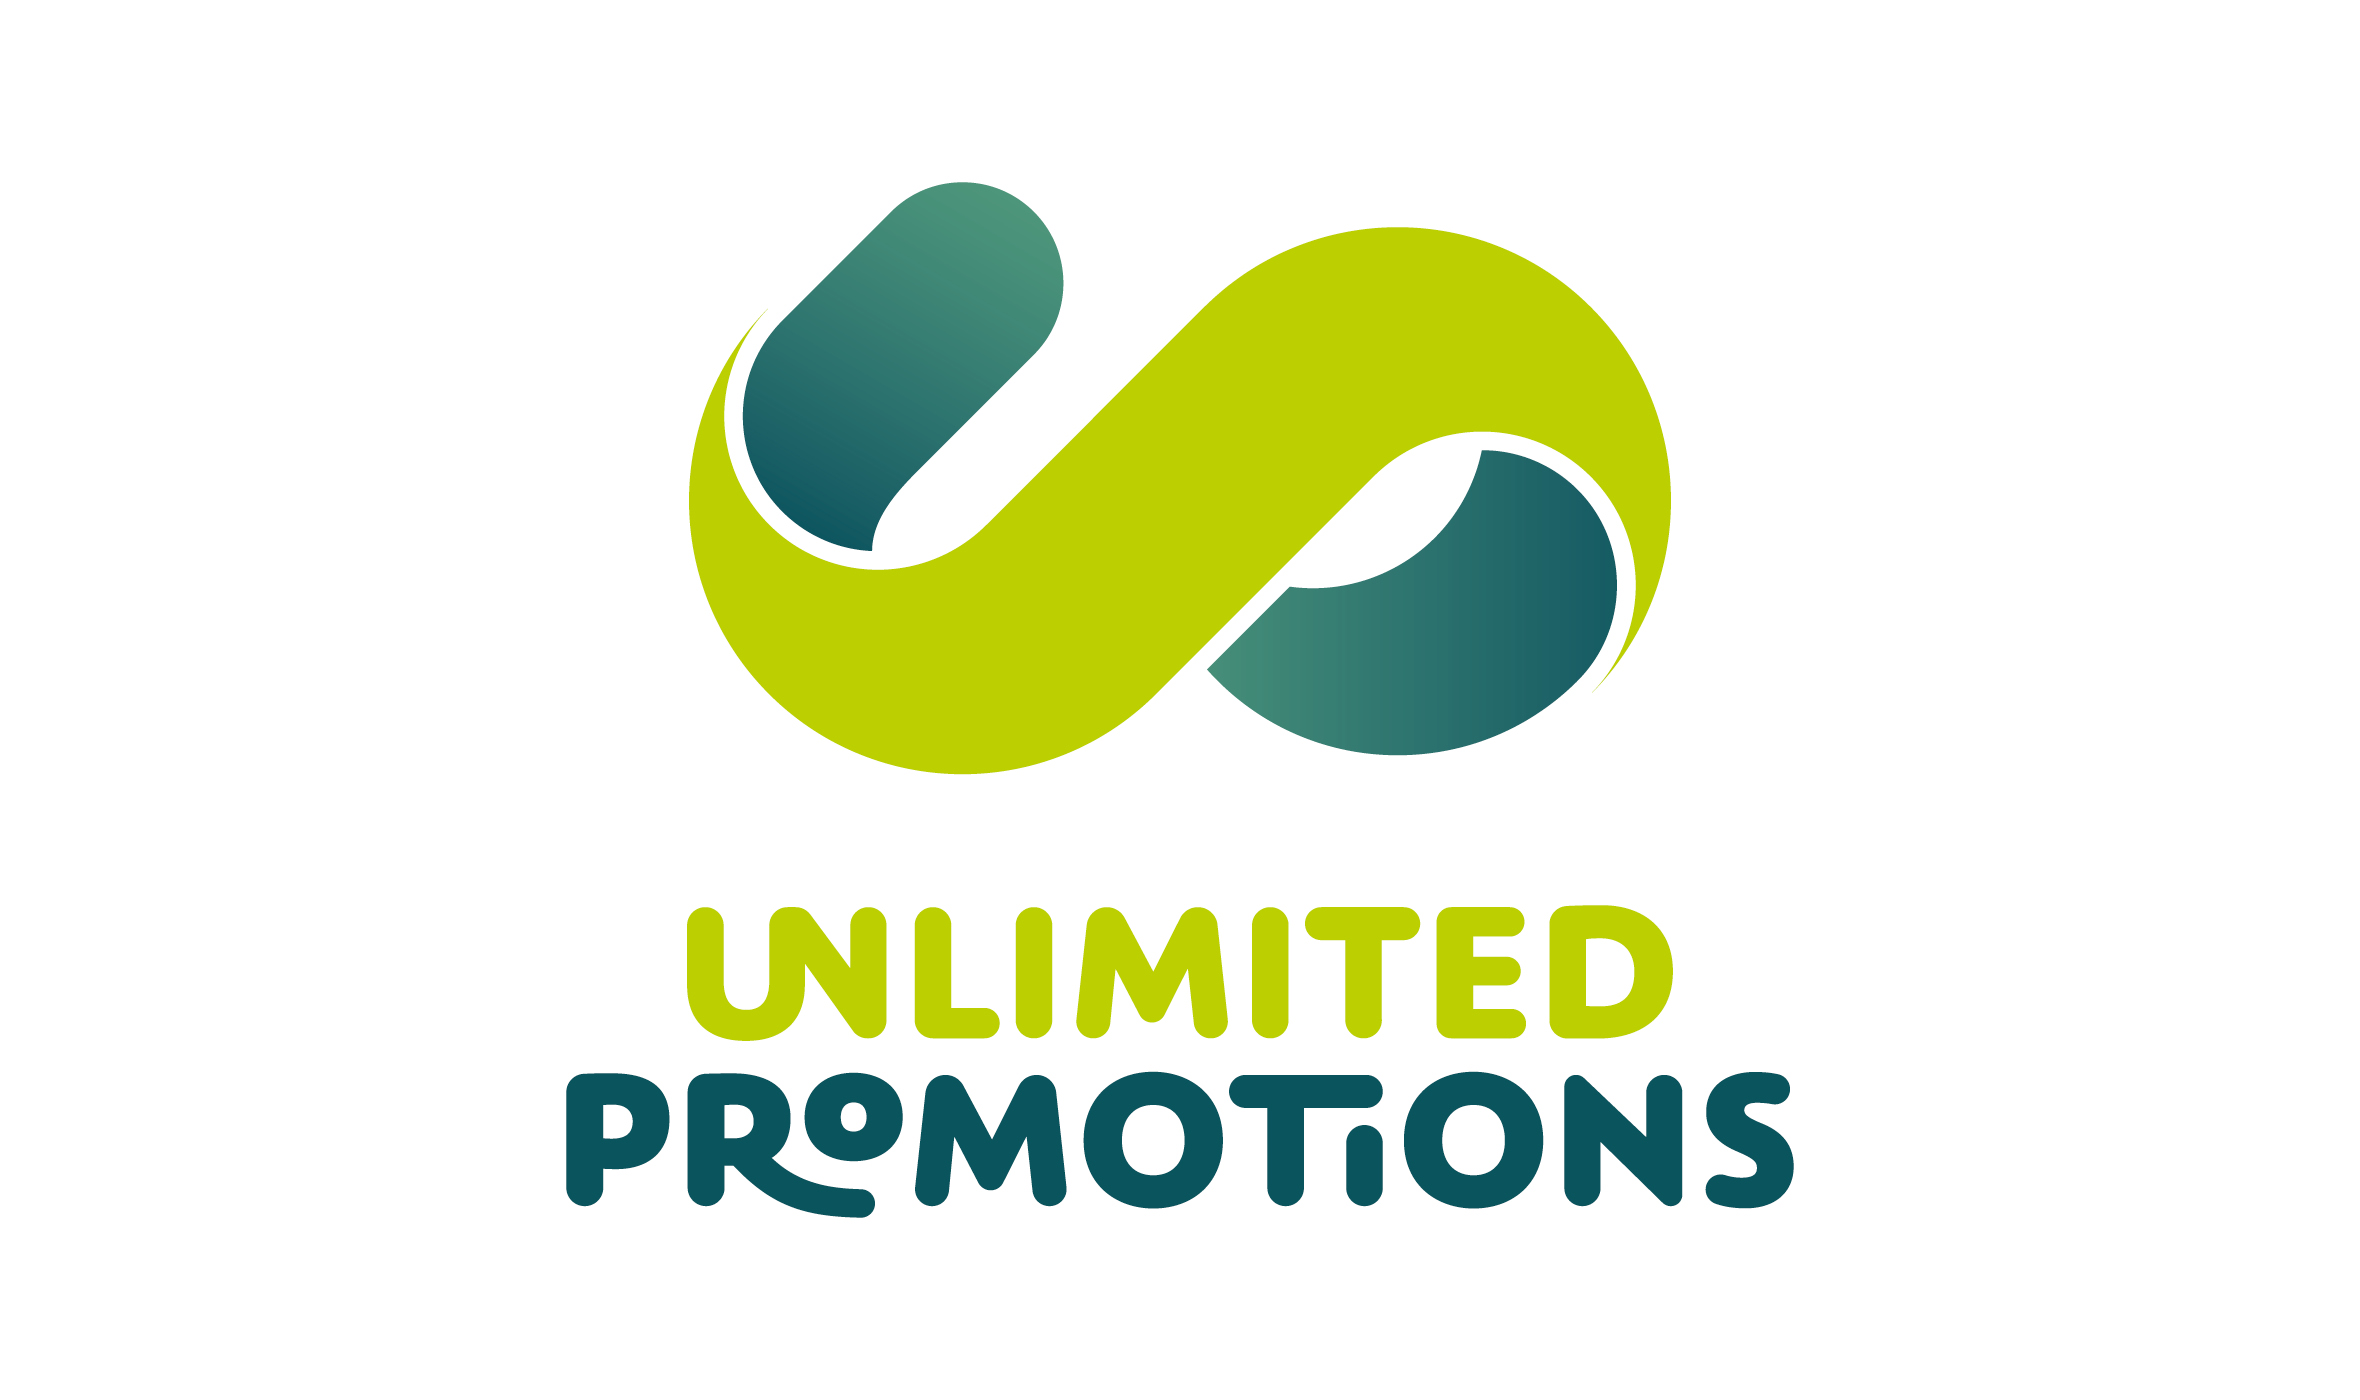 Unlimited Promotions, Logoentwicklung, Wort-Bildmarke, mittig